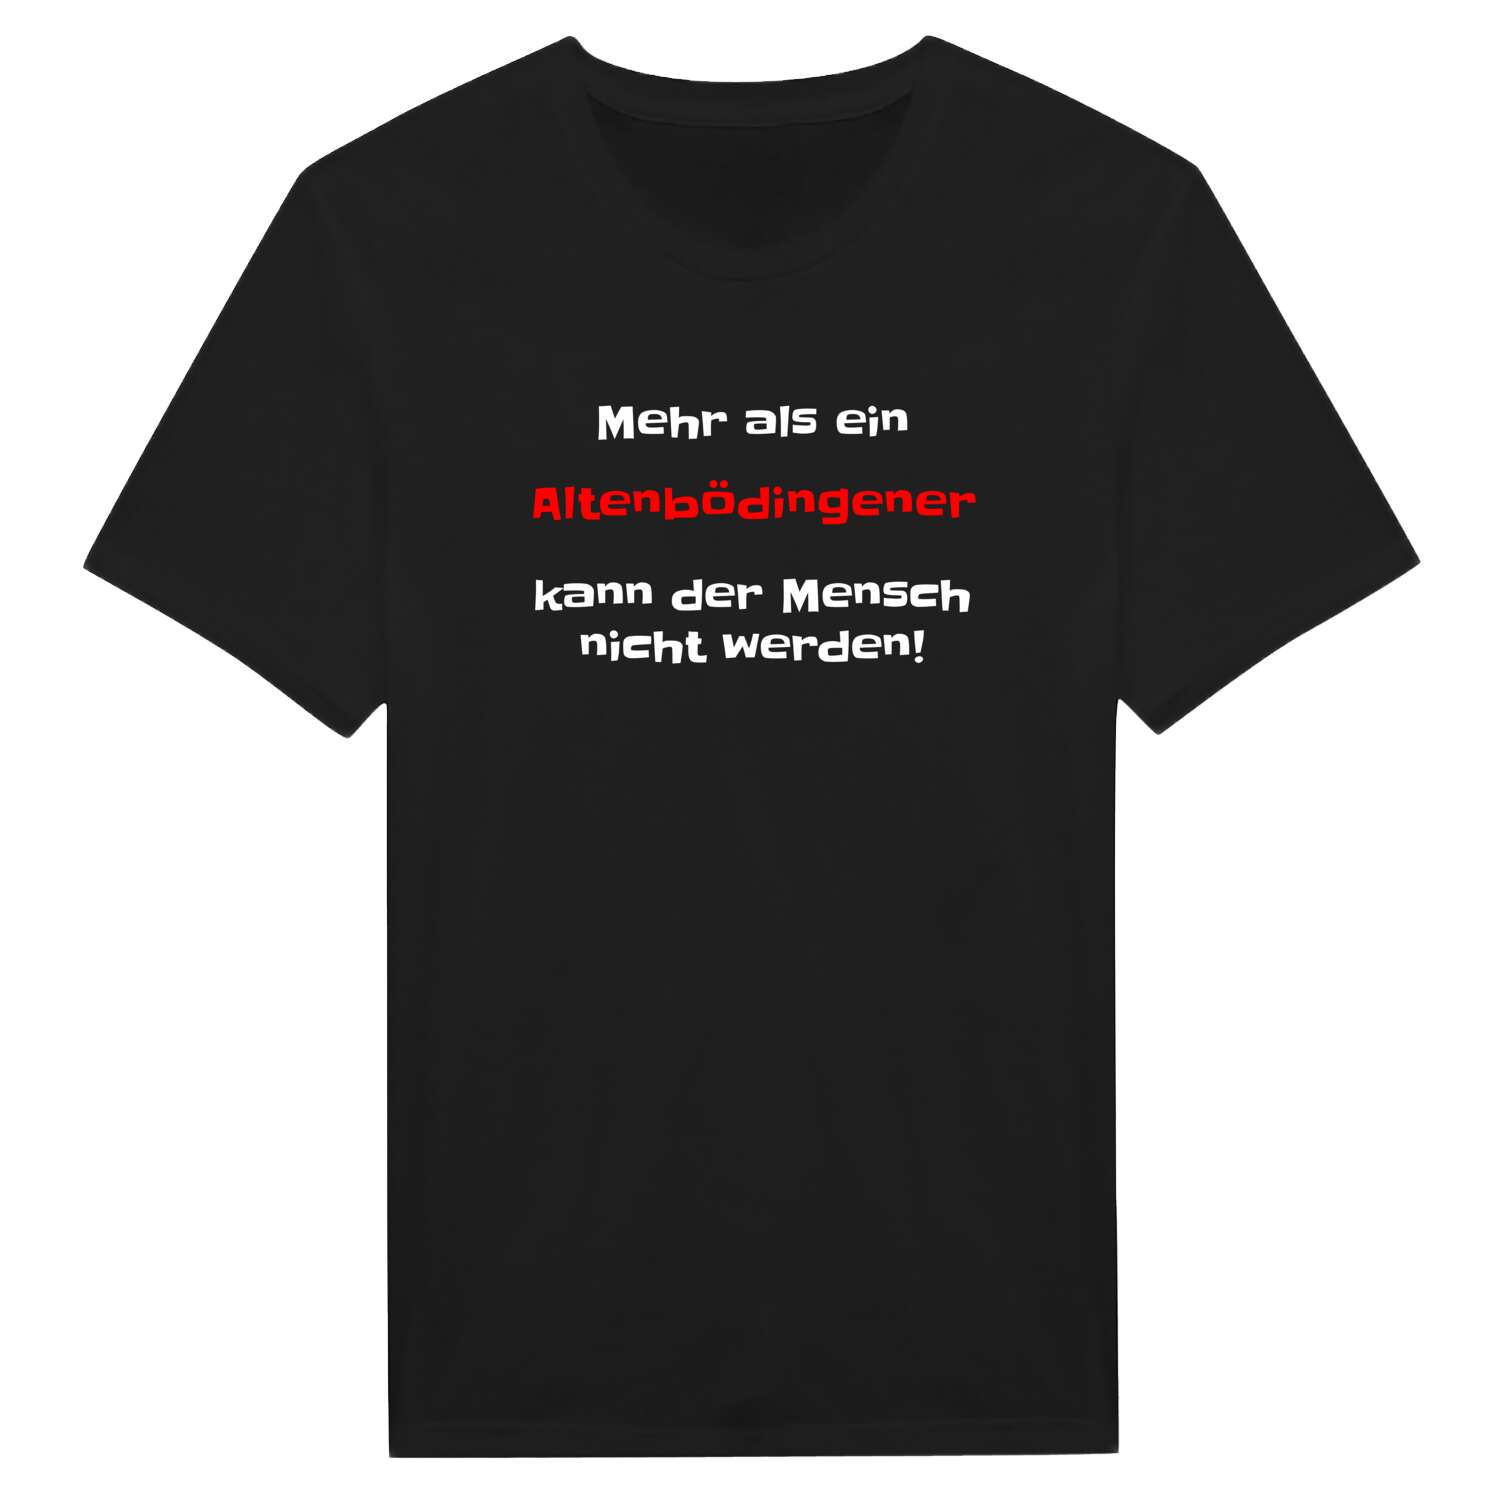 Altenbödingen T-Shirt »Mehr als ein«